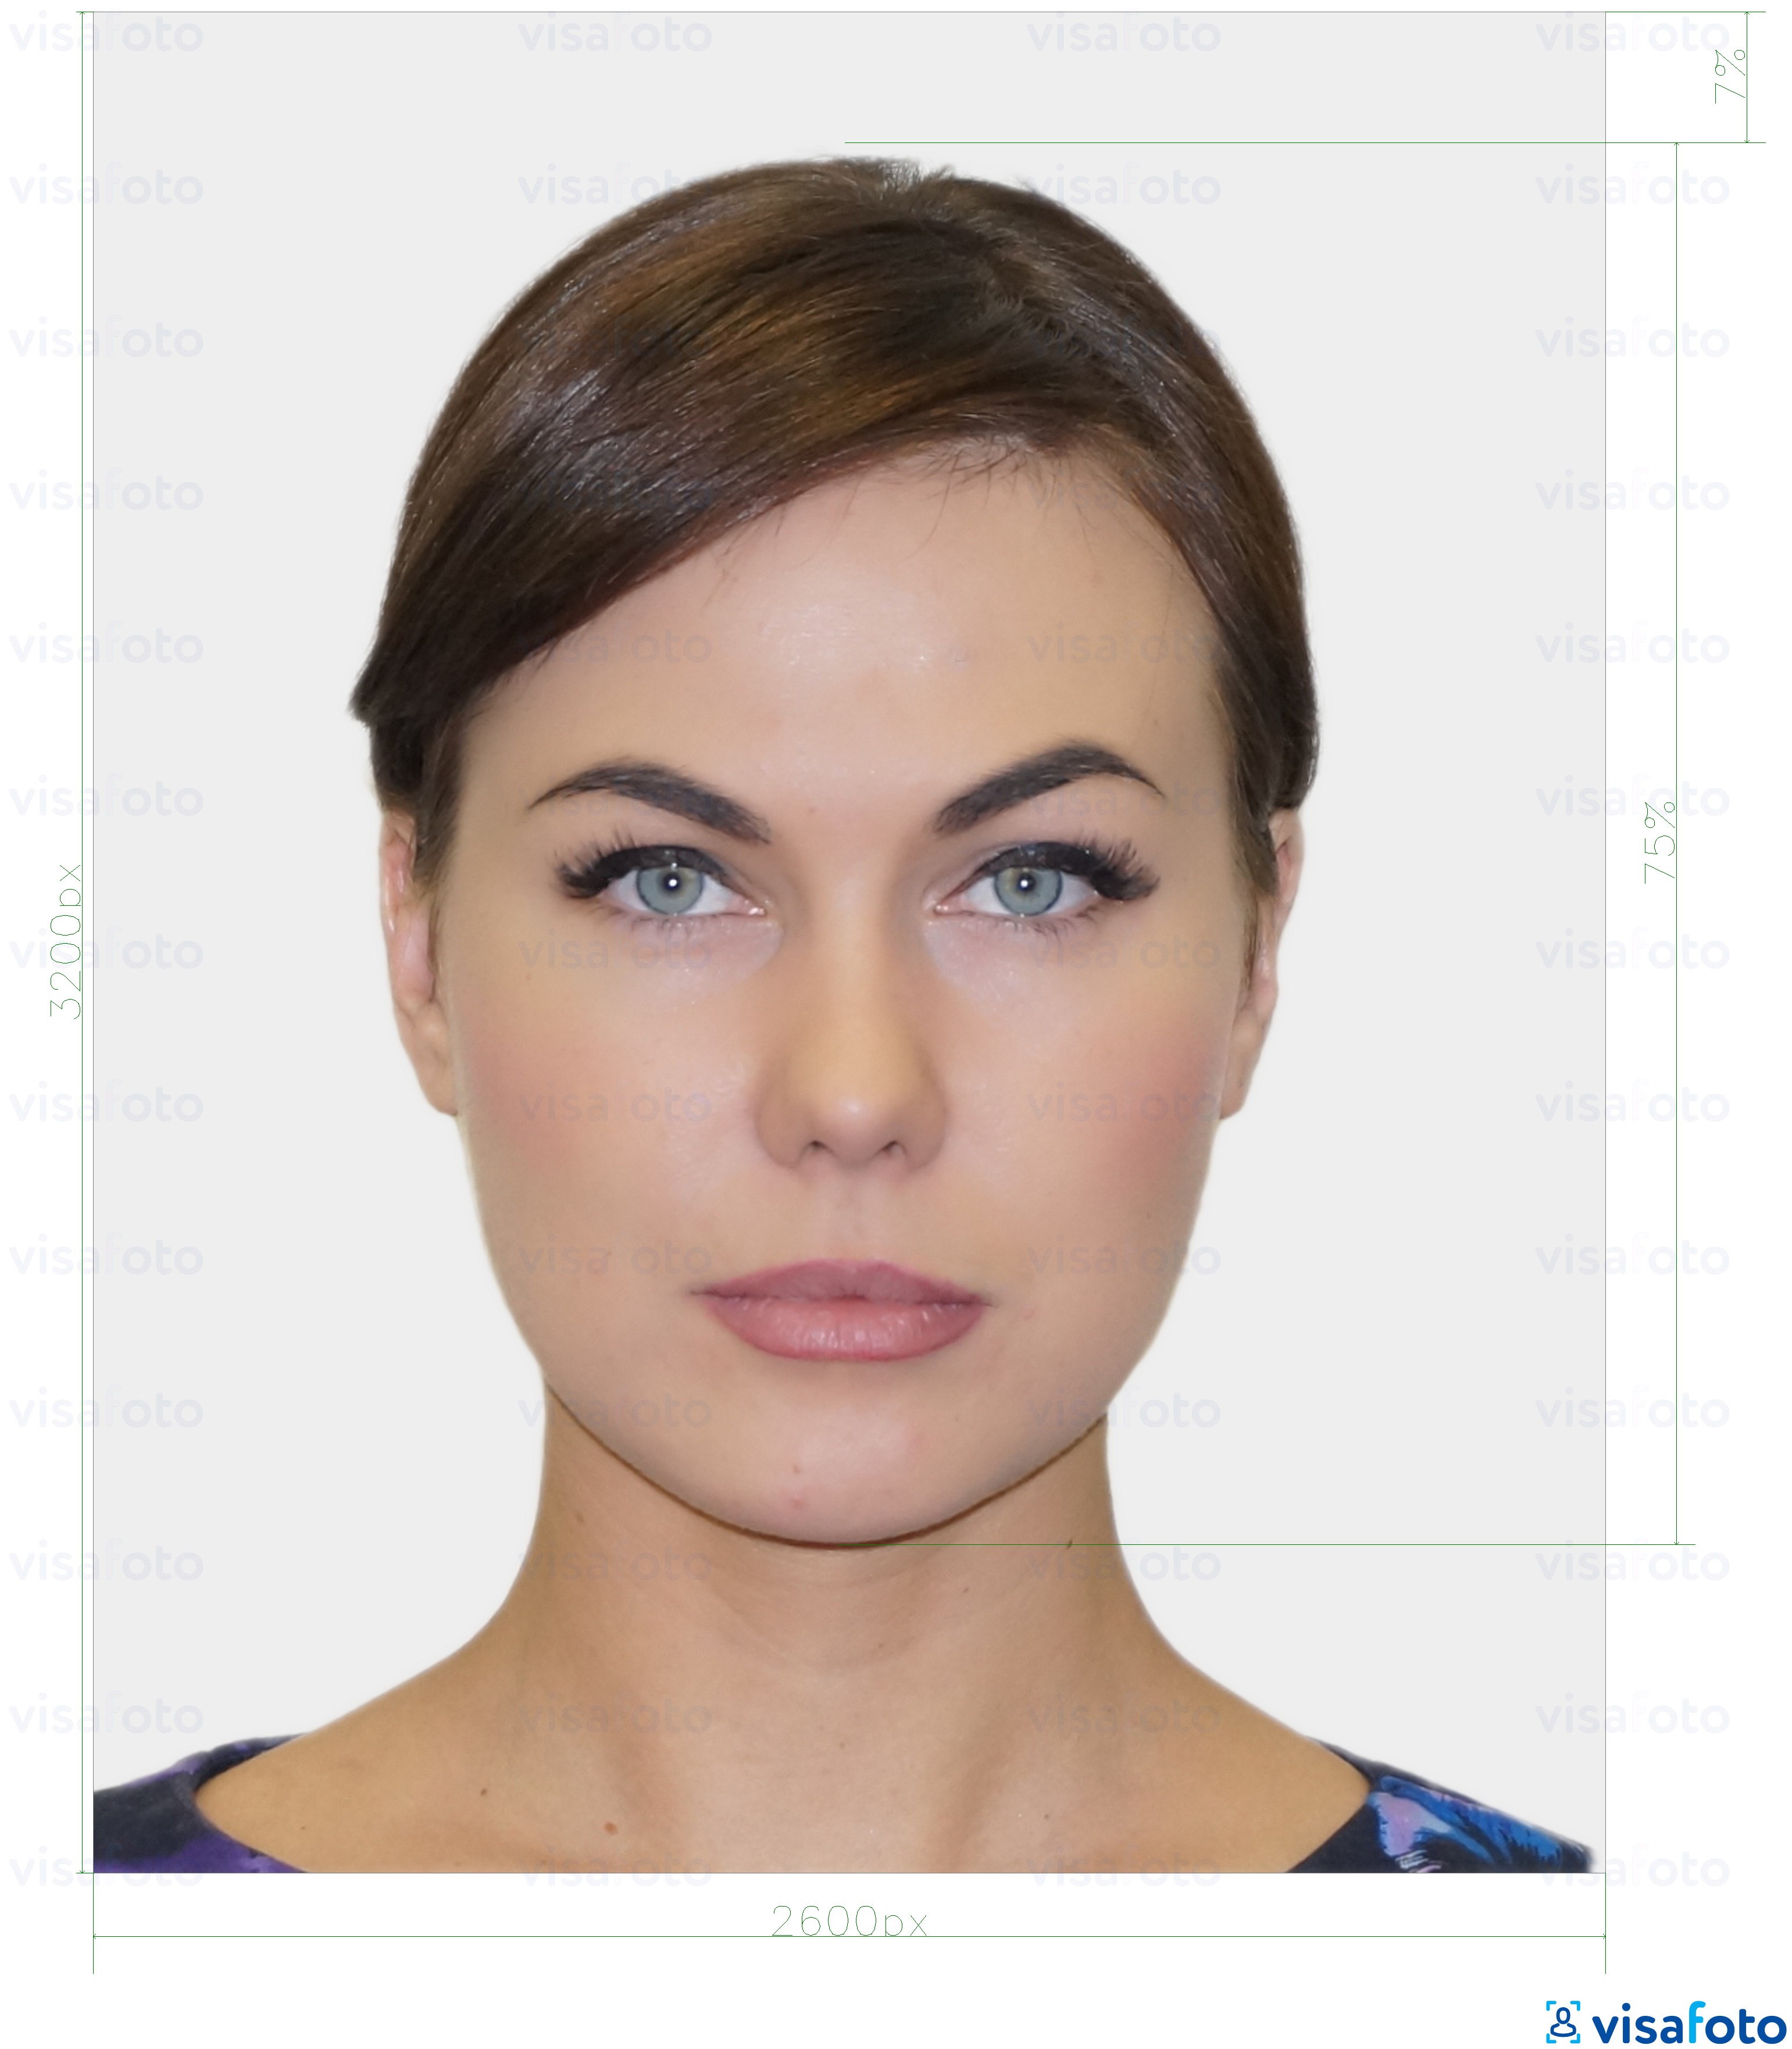 Eksempel på billede for Estland resident digitalt identitetskort 1300x1600 pixels med præcis størrelsesspecifikation.